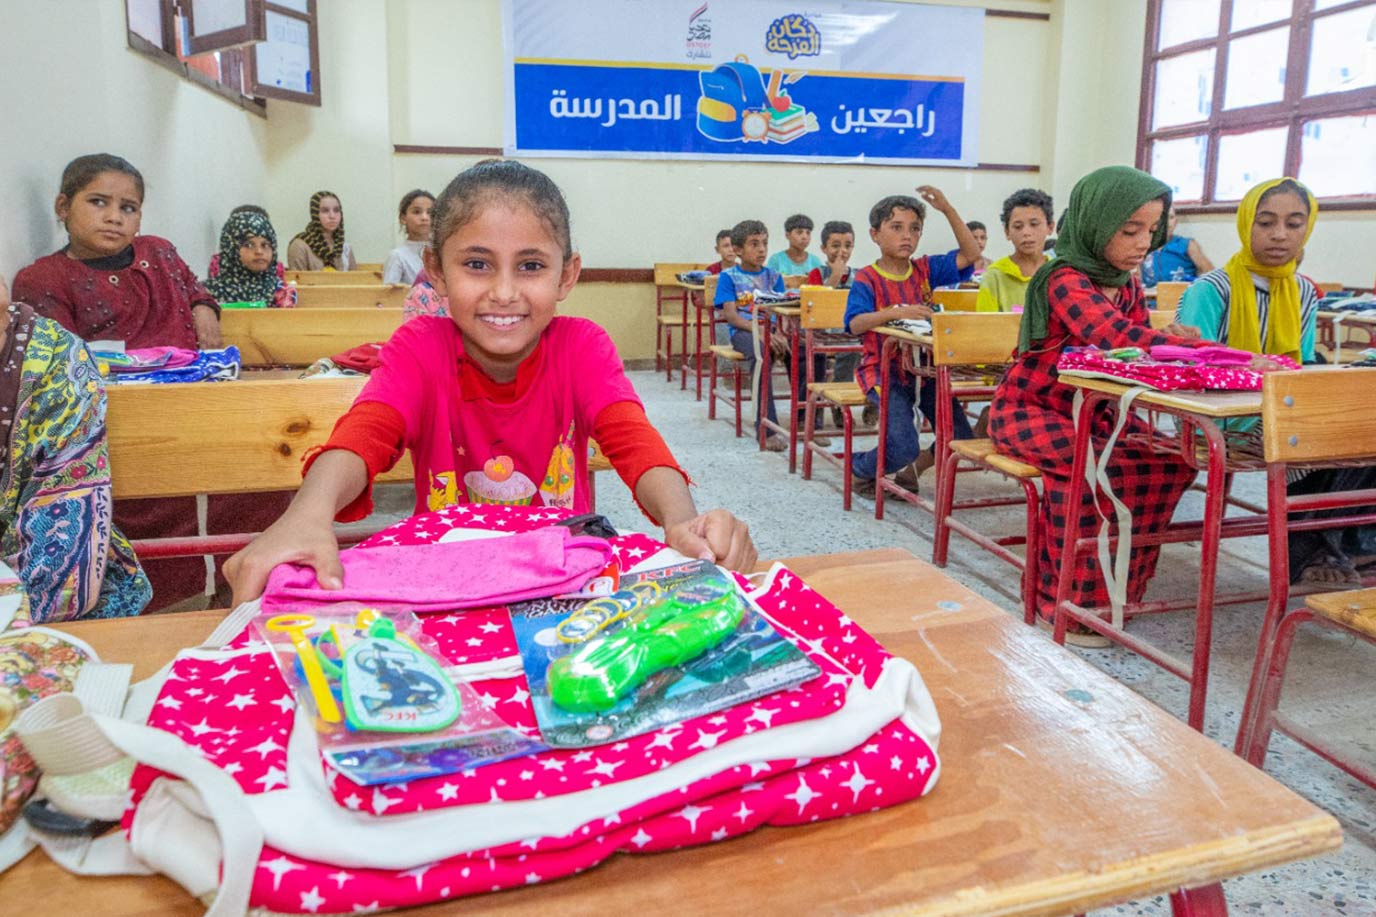  صندوق تحيا مصر يوفر المستلزمات المدرسية لـ 4 آلاف طالب في 3 محافظات 